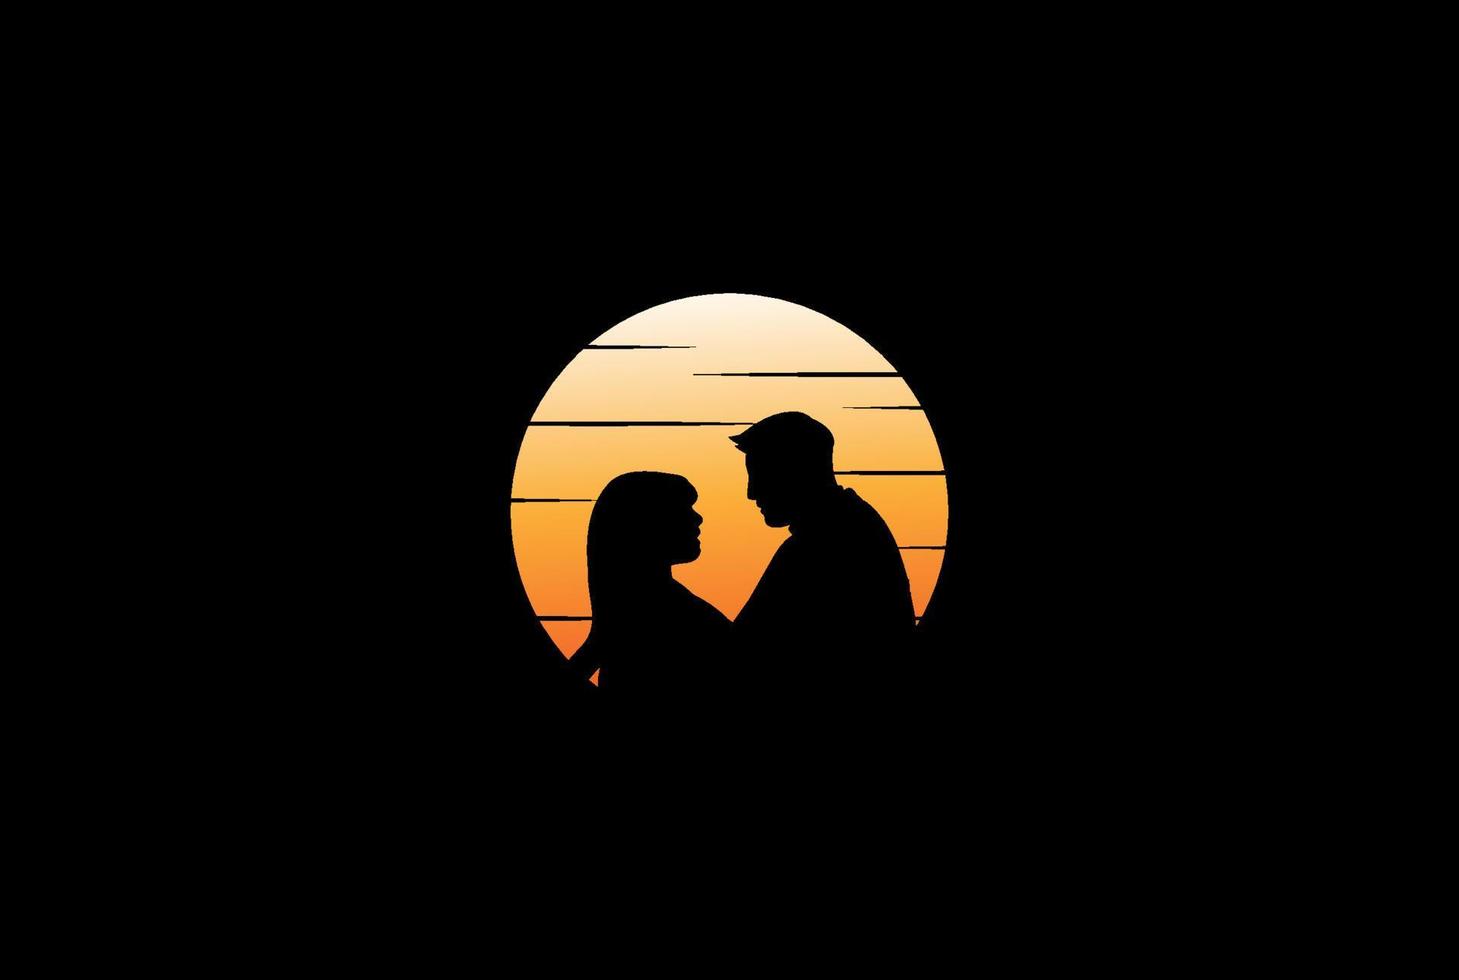 Sonnenuntergang romantisches Paar für Dating, Valentinstag, Flitterwochen, Liebe oder Hochzeit Logo-Design-Vektor vektor